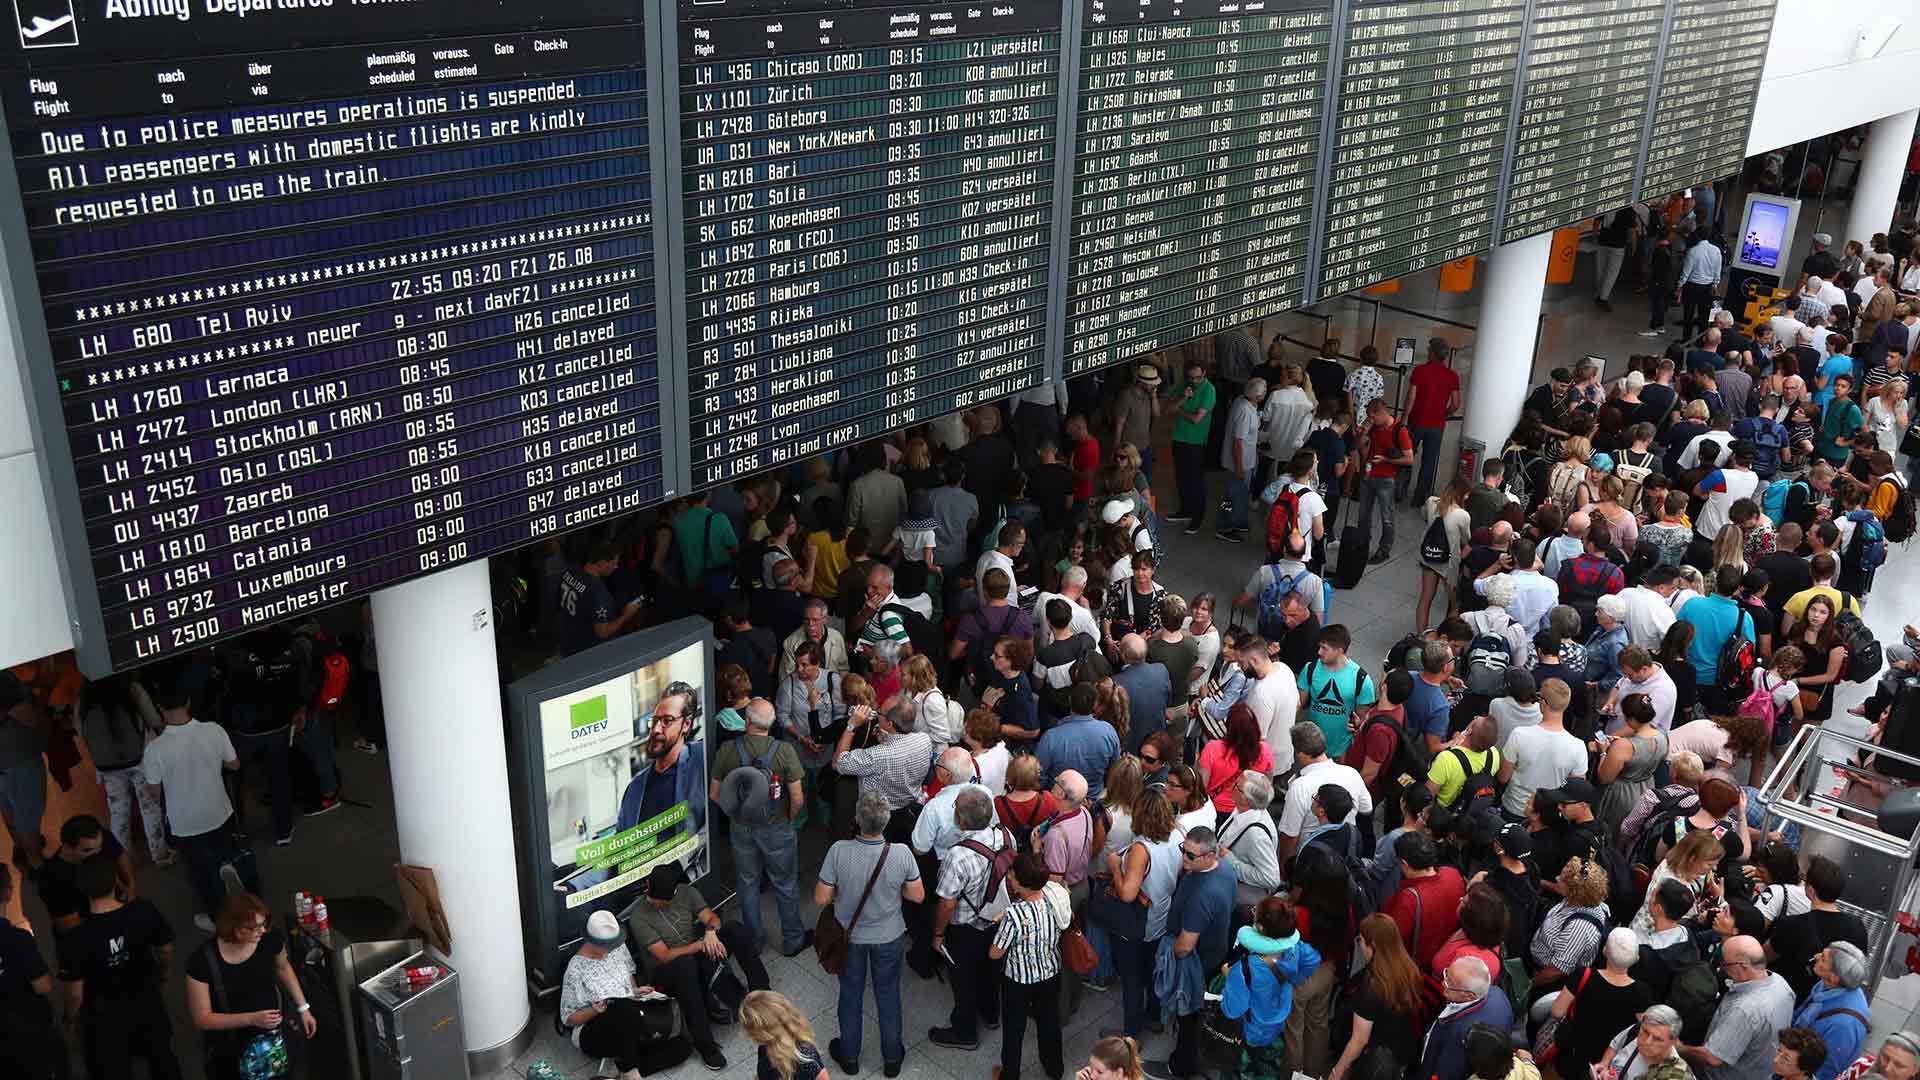 El aeropuerto de Múnich paralizado por culpa de un español al equivocarse de acceso